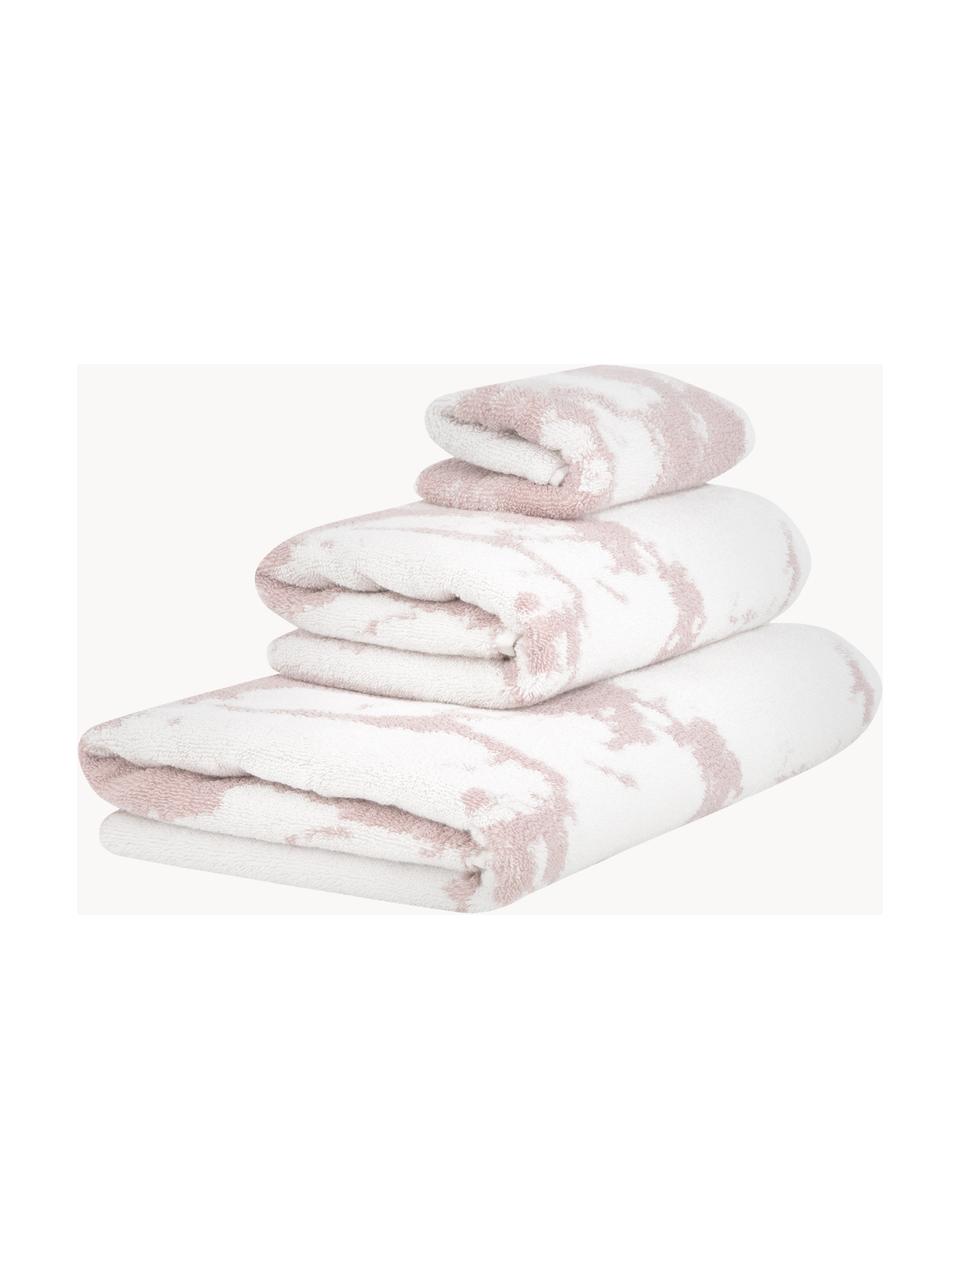 Set 3 asciugamani con stampa marmo Malin, Rosa chiaro, bianco, Set da 3 (asciugamano ospite, asciugamano e telo bagno)